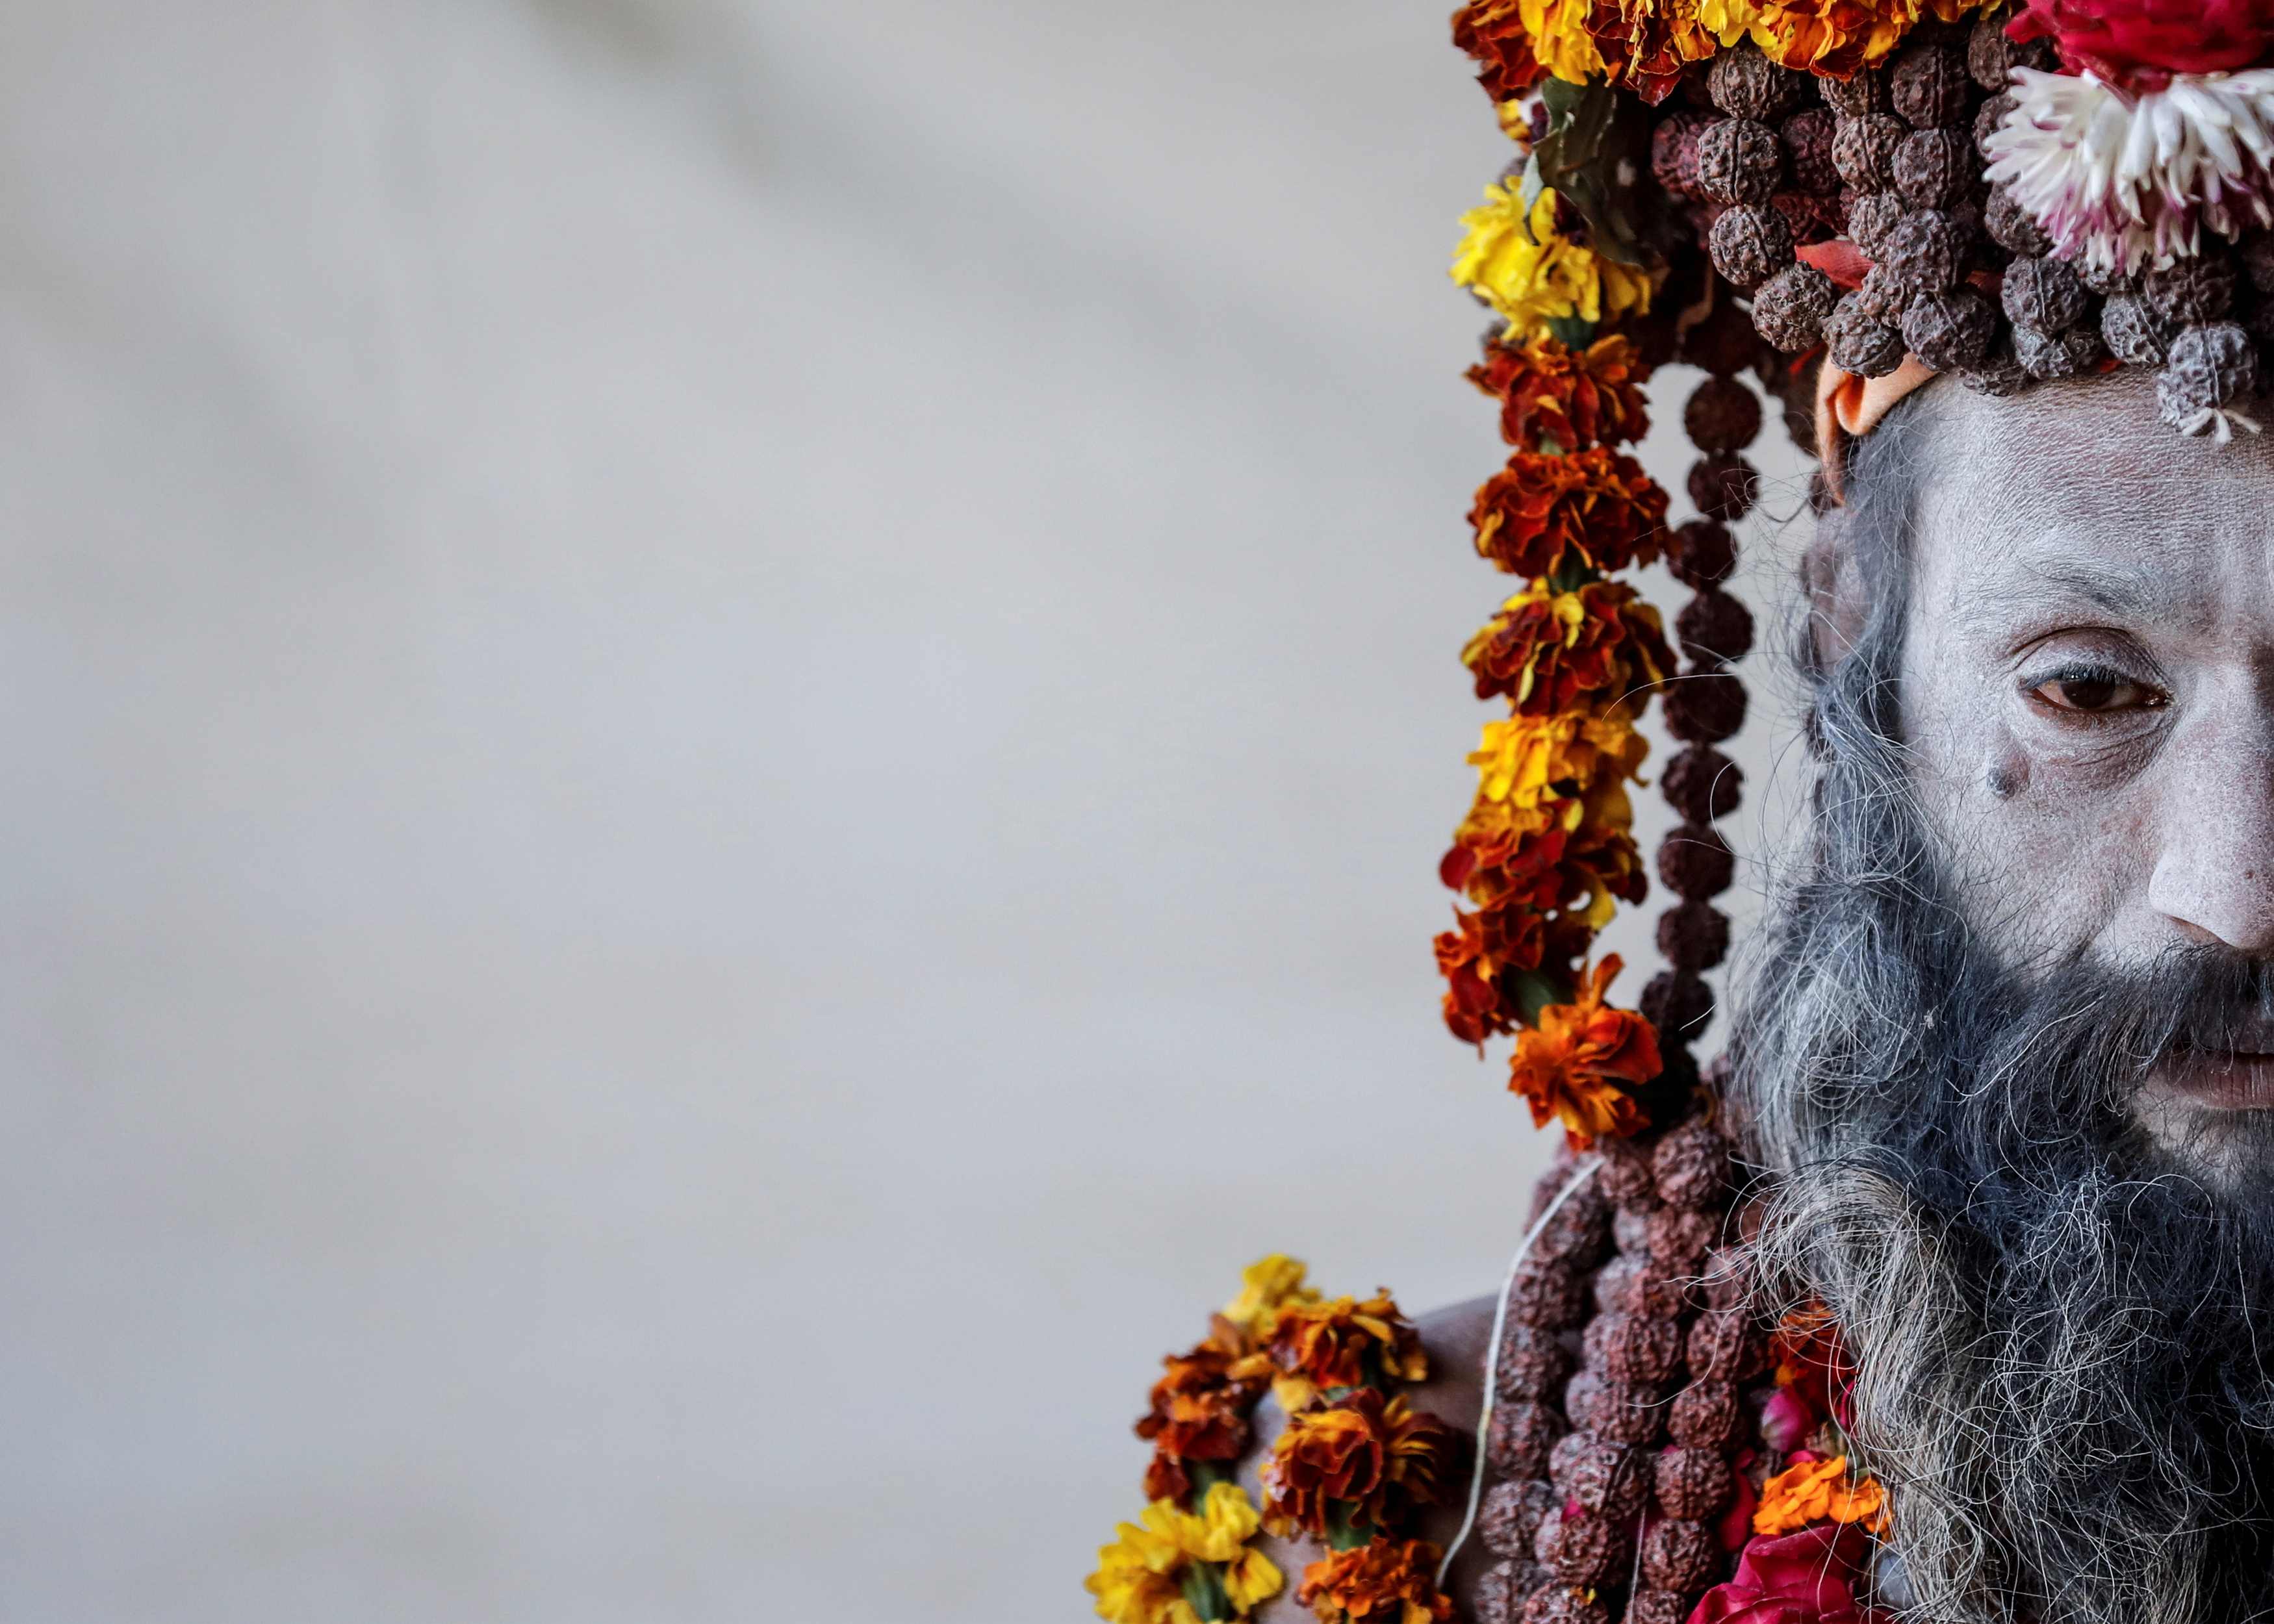 Un Naga Sadhu u hombre santo hindú espera a los devotos dentro de su campamento durante el "Kumbh Mela" o el Festival de la Jarra, en Prayagraj, anteriormente conocido como Allahabad, India 17 de enero de 2019.